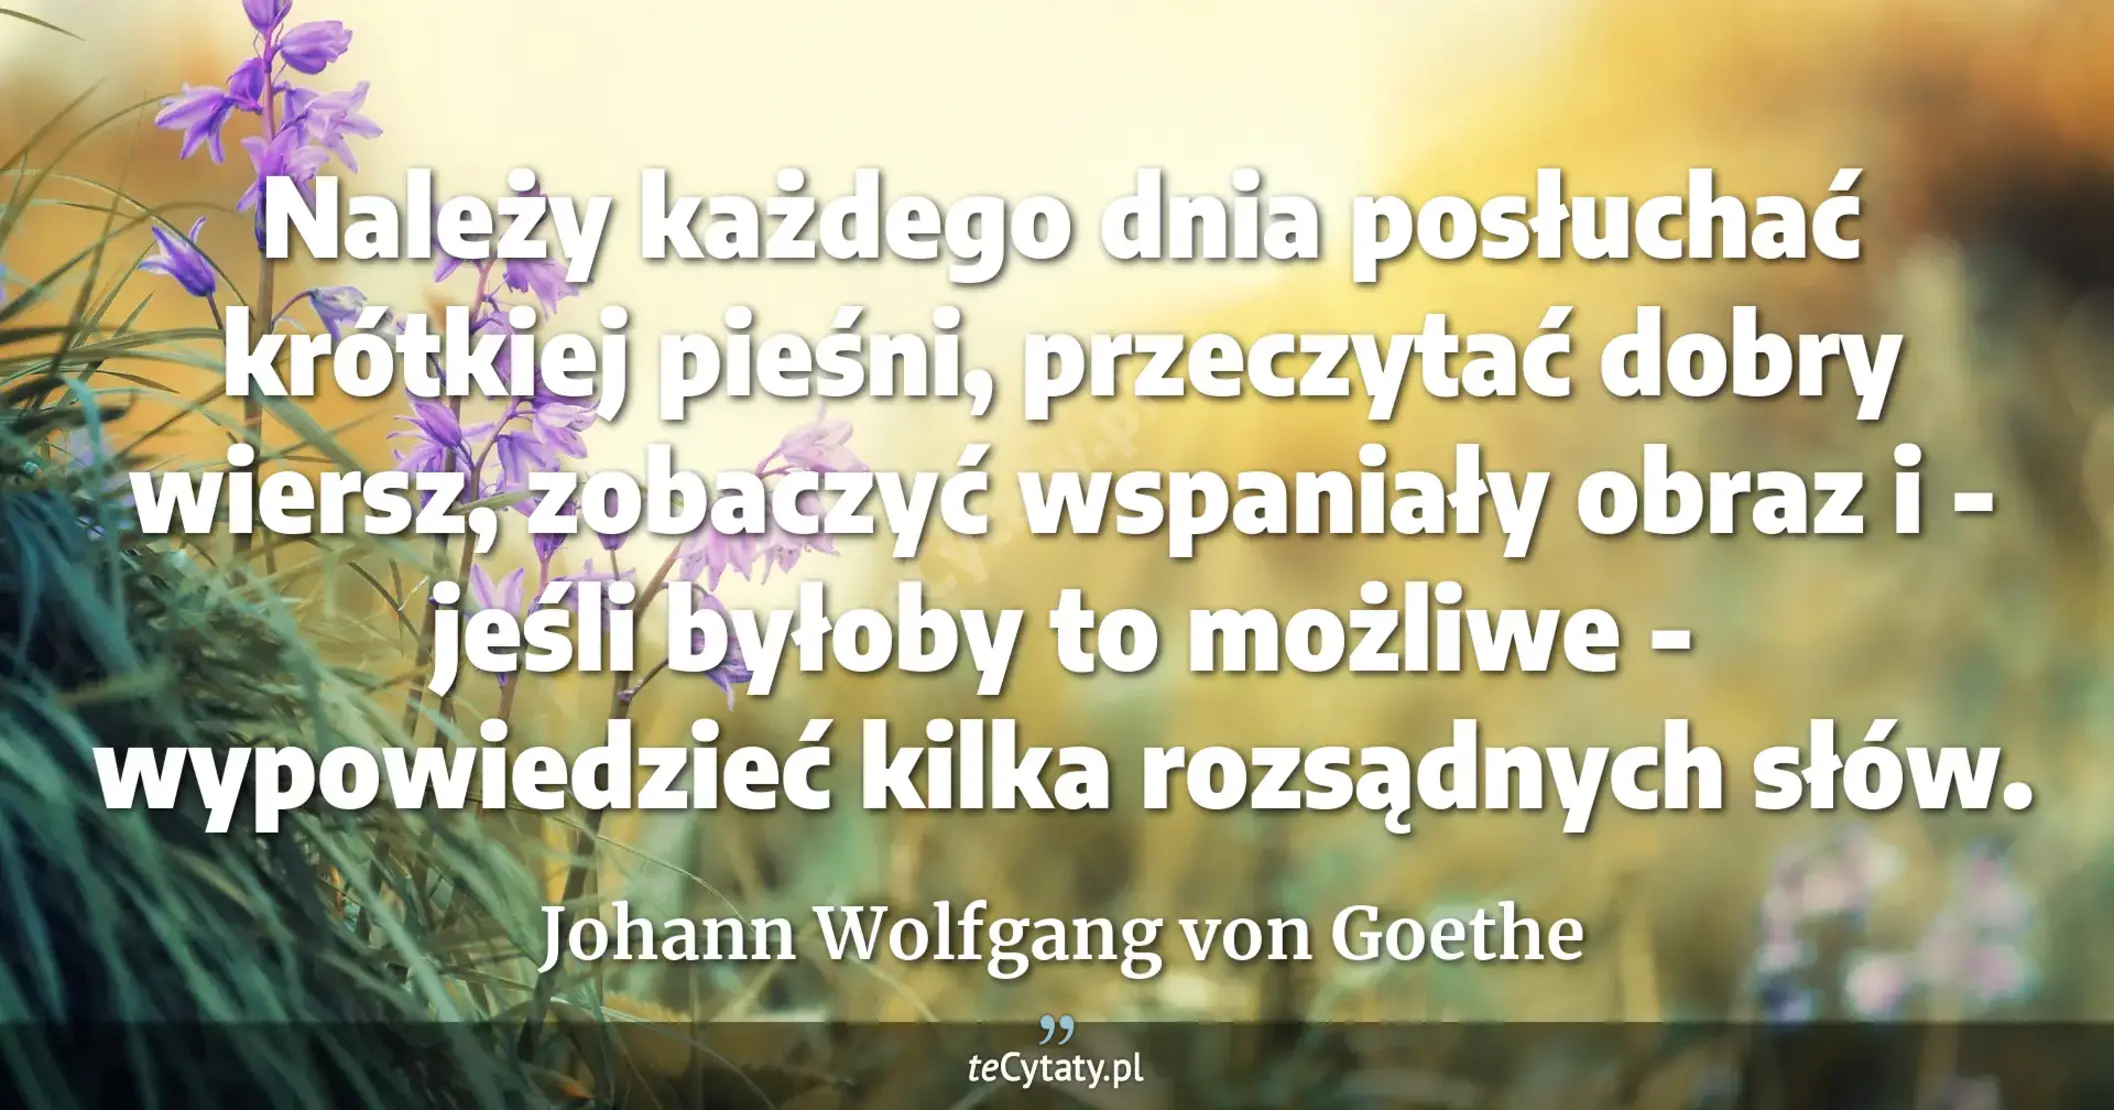 Należy każdego dnia posłuchać krótkiej pieśni, przeczytać dobry wiersz, zobaczyć wspaniały obraz i - jeśli byłoby to możliwe - wypowiedzieć kilka rozsądnych słów. - Johann Wolfgang von Goethe